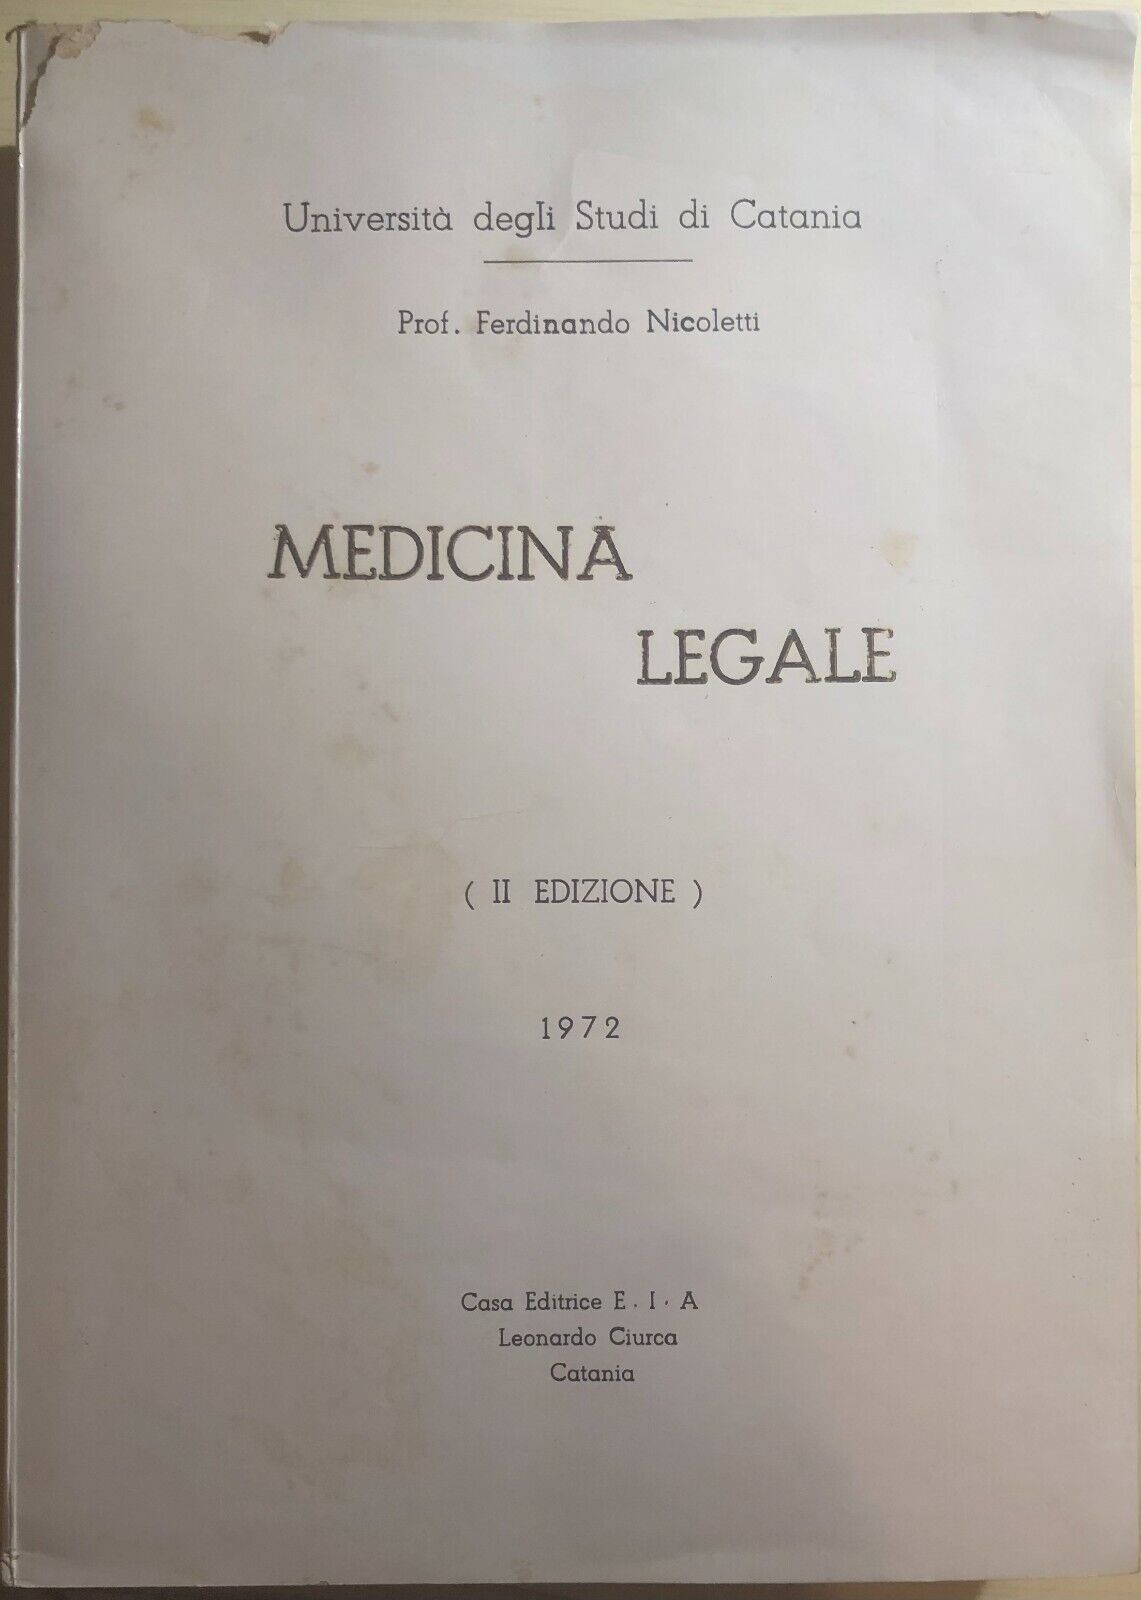 Medicina Legale di Prof. Ferdinando Nicoletti,  1972,  Casa Editrice Eia Leonard